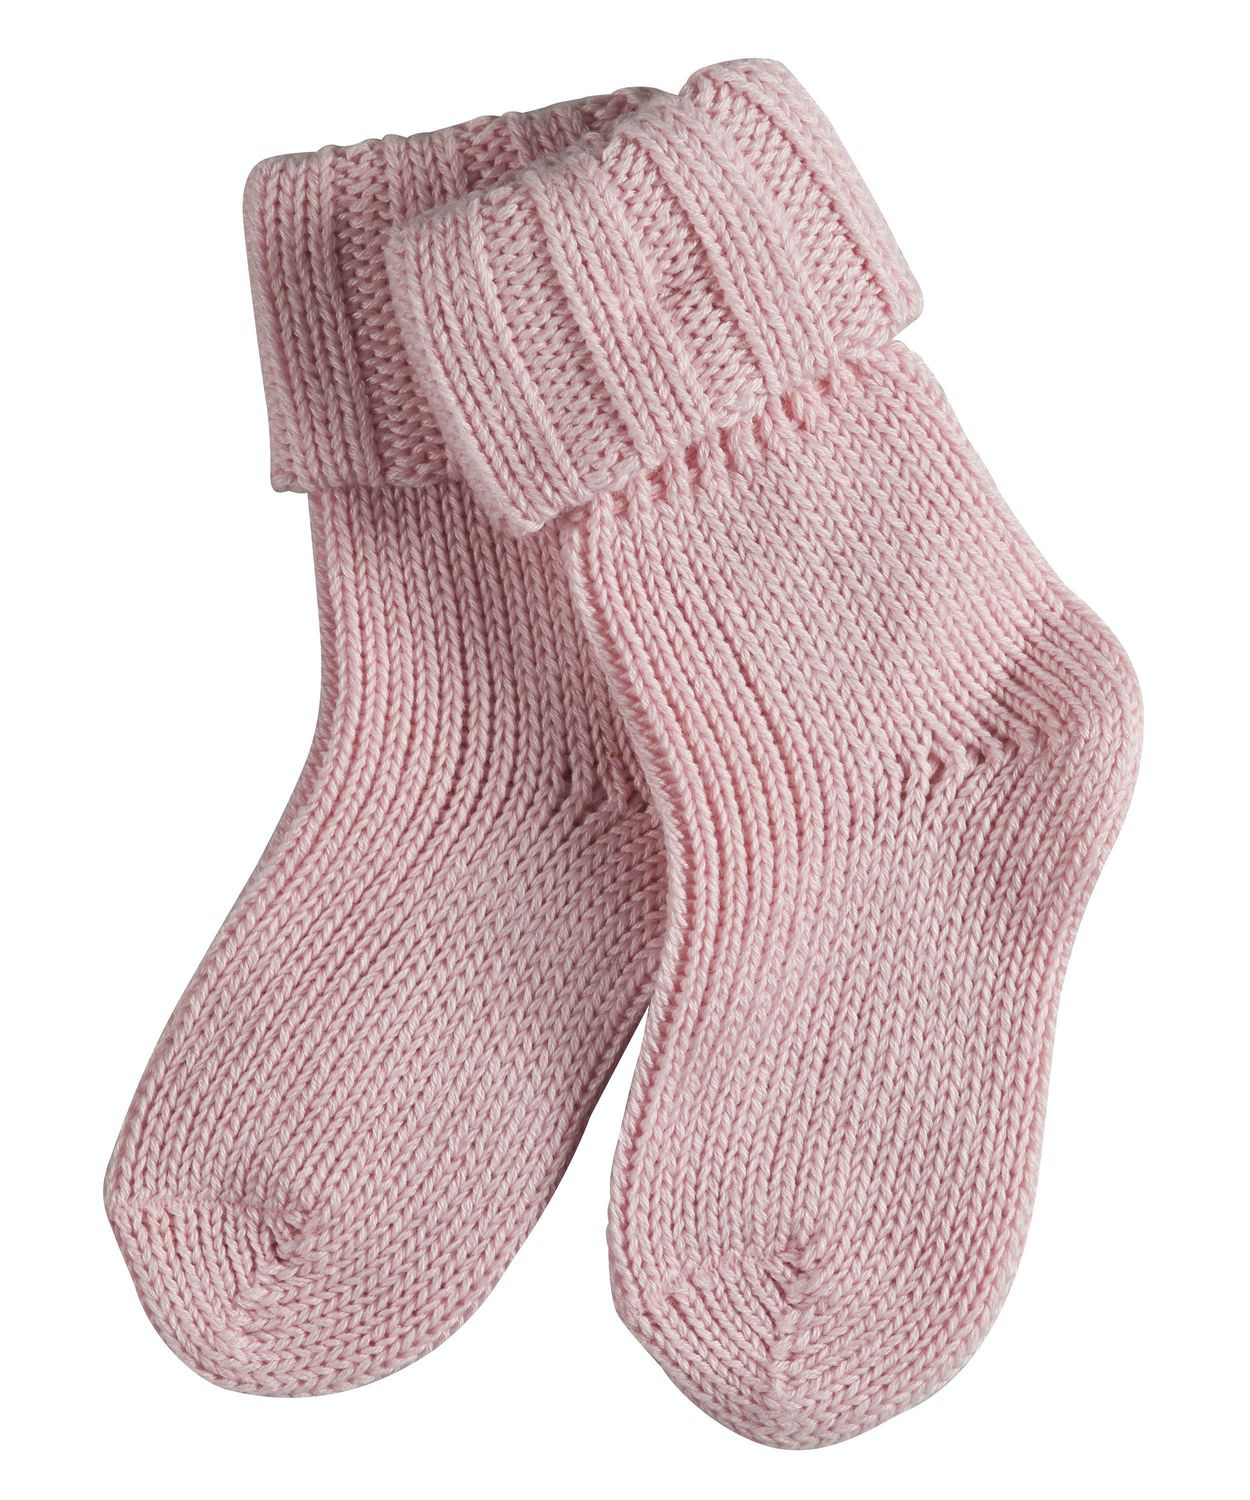 Falke Baby Socken Flausch Hersteller: Falke Bestellnummer:4043876247571